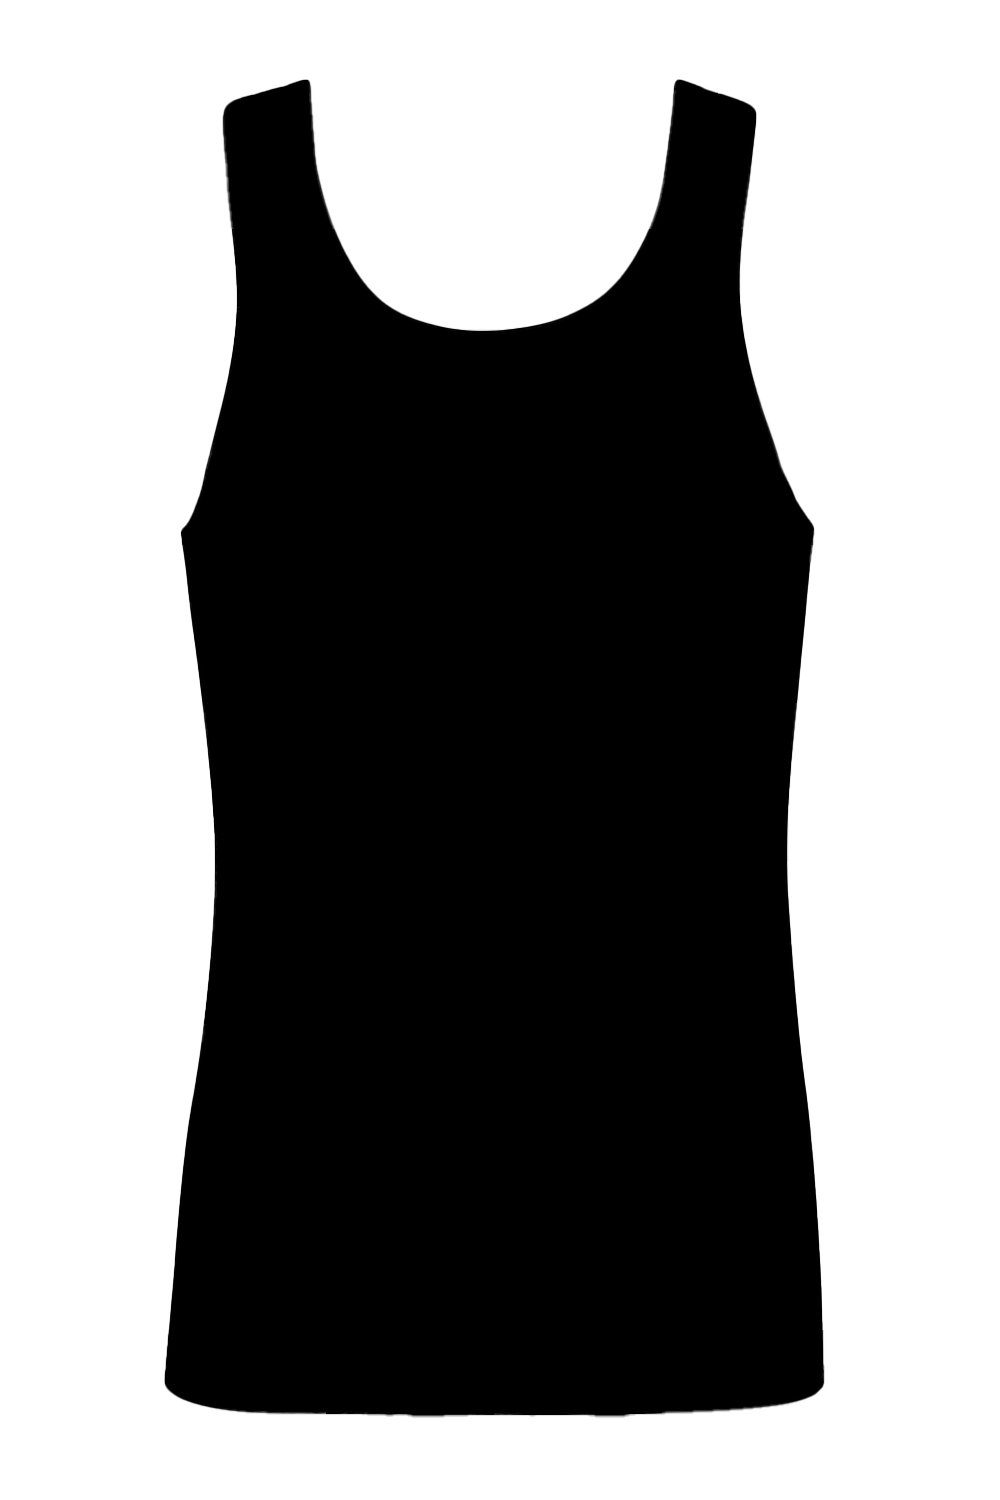 Lisca Achselhemd Unterhemd 31009 schwarz